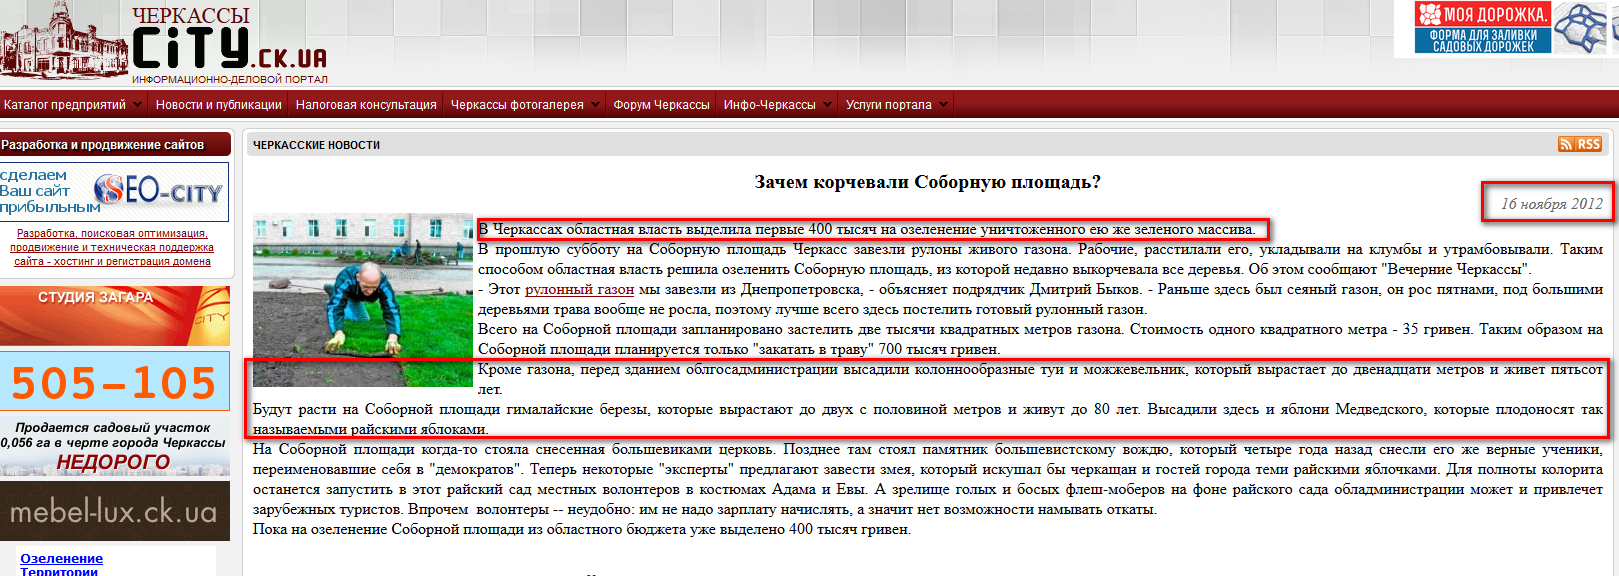 http://city.ck.ua/news/2012-year/zachem-korchevali-sobornuyu-ploschad.html